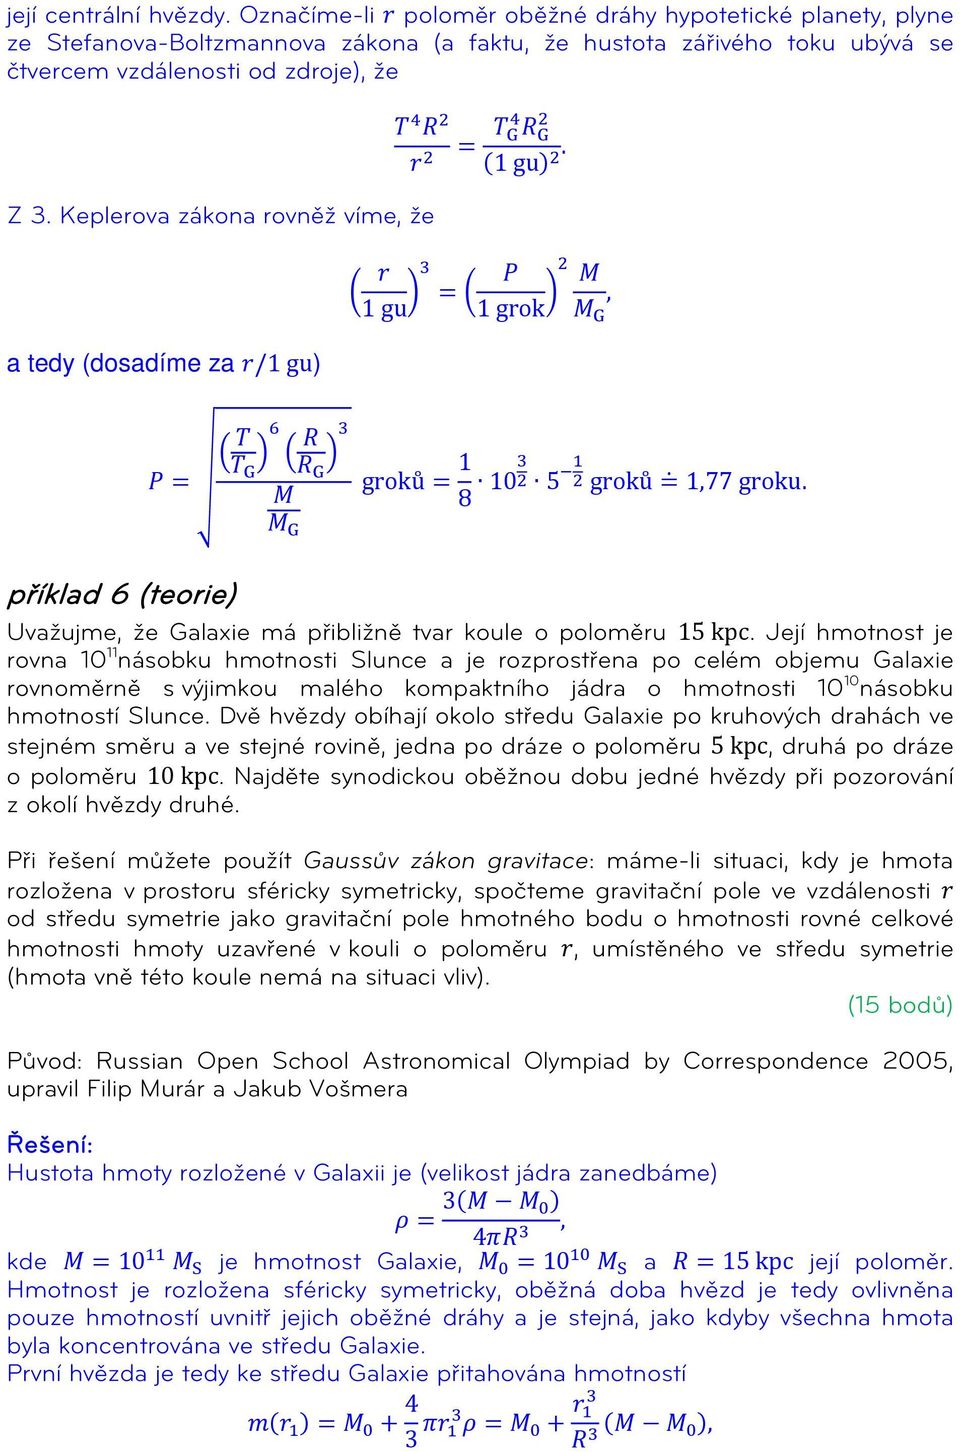 Keplerova zákona rovněž víme, že a tedy (dosadíme za r/1 gu) r 1 gu 3 4 R G 2 r 2 = T G (1 gu) 2. P M = 1 grok 2, M G T 6 R 3 T P = G R G 1 groků = M 8 103 2 5 1 2 groků = 1,77 groku.